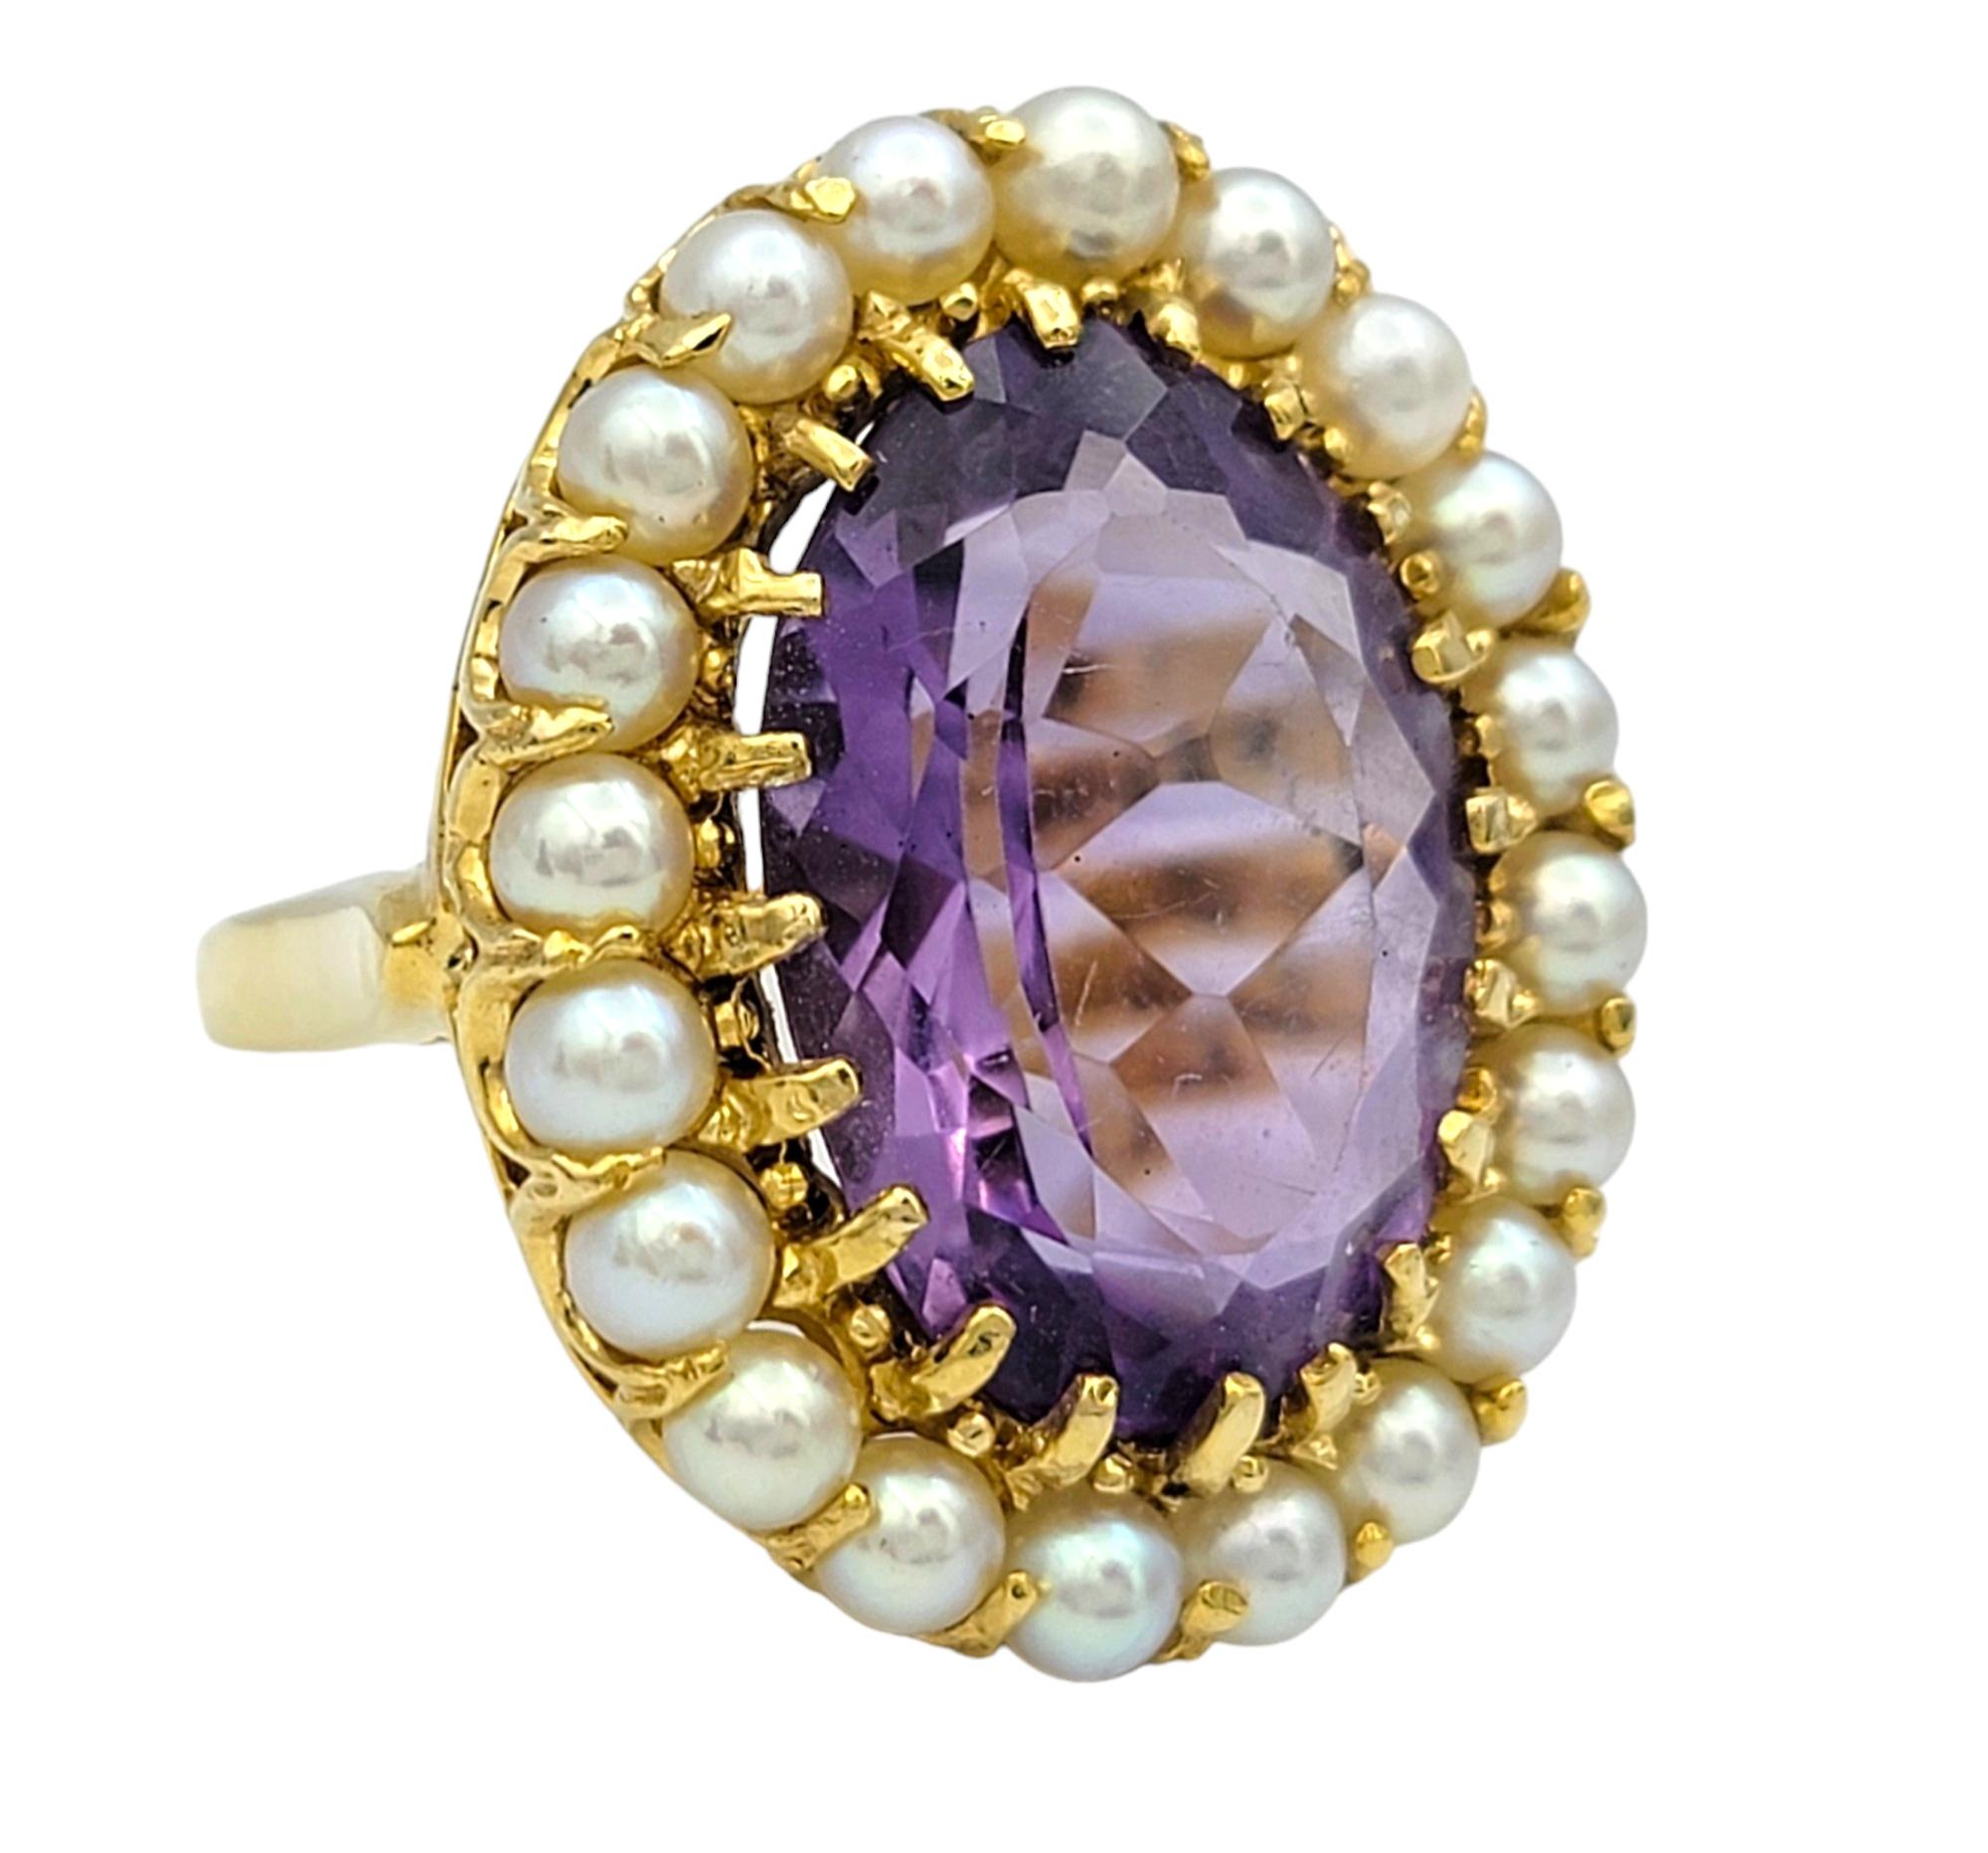 Taille de l'anneau : 8.5

Cette magnifique bague est ornée en son centre d'une grande améthyste ovale de couleur pourpre, dont la riche teinte rayonne d'élégance et de sophistication. L'améthyste est entourée d'un délicat halo de perles de rocaille